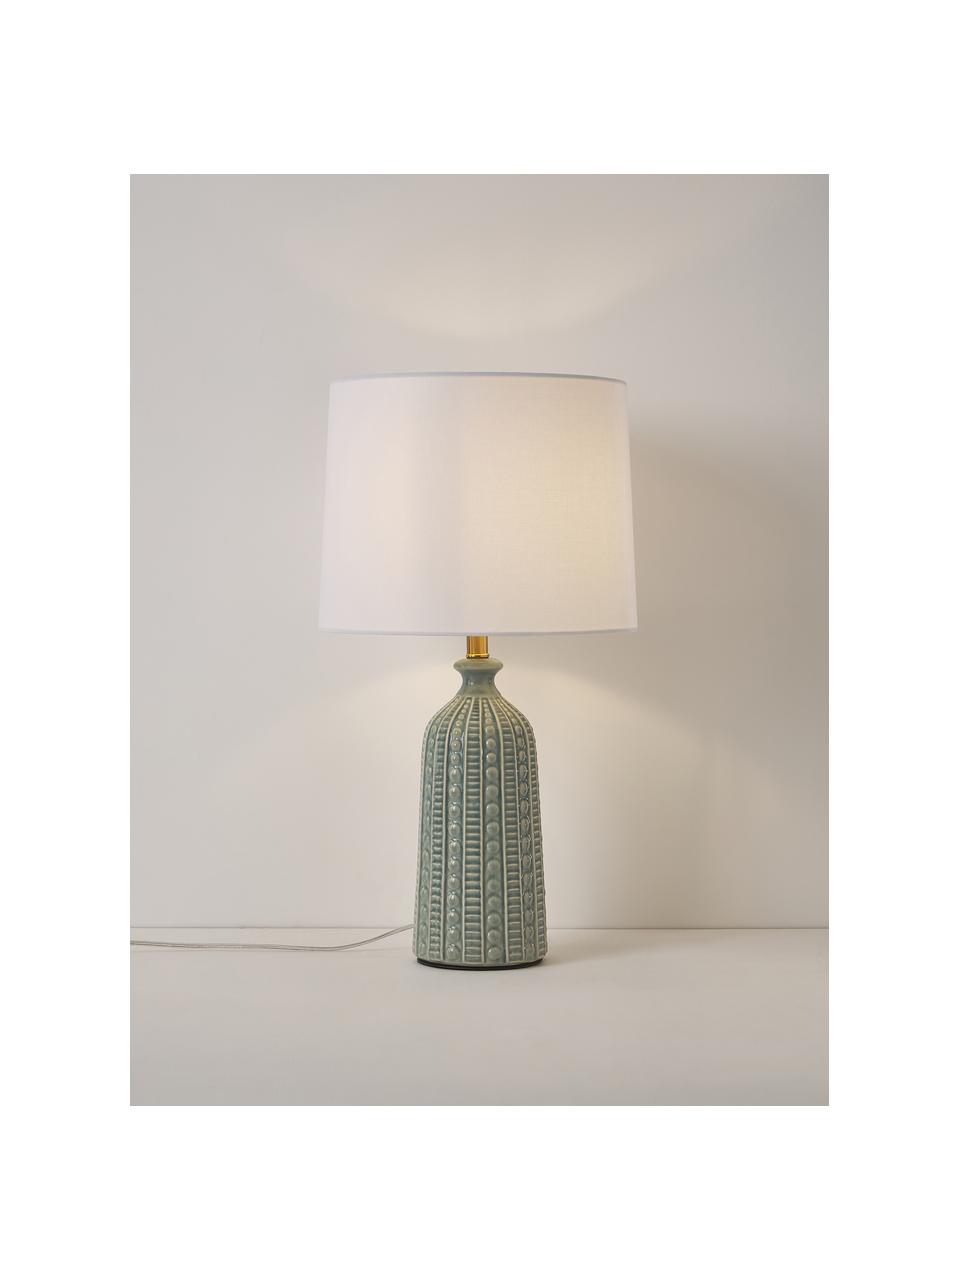 Grote keramische tafellamp Nizza, Lampenkap: textiel, Lampvoet: keramiek, Saliegroen, wit, Ø 33 x H 60 cm